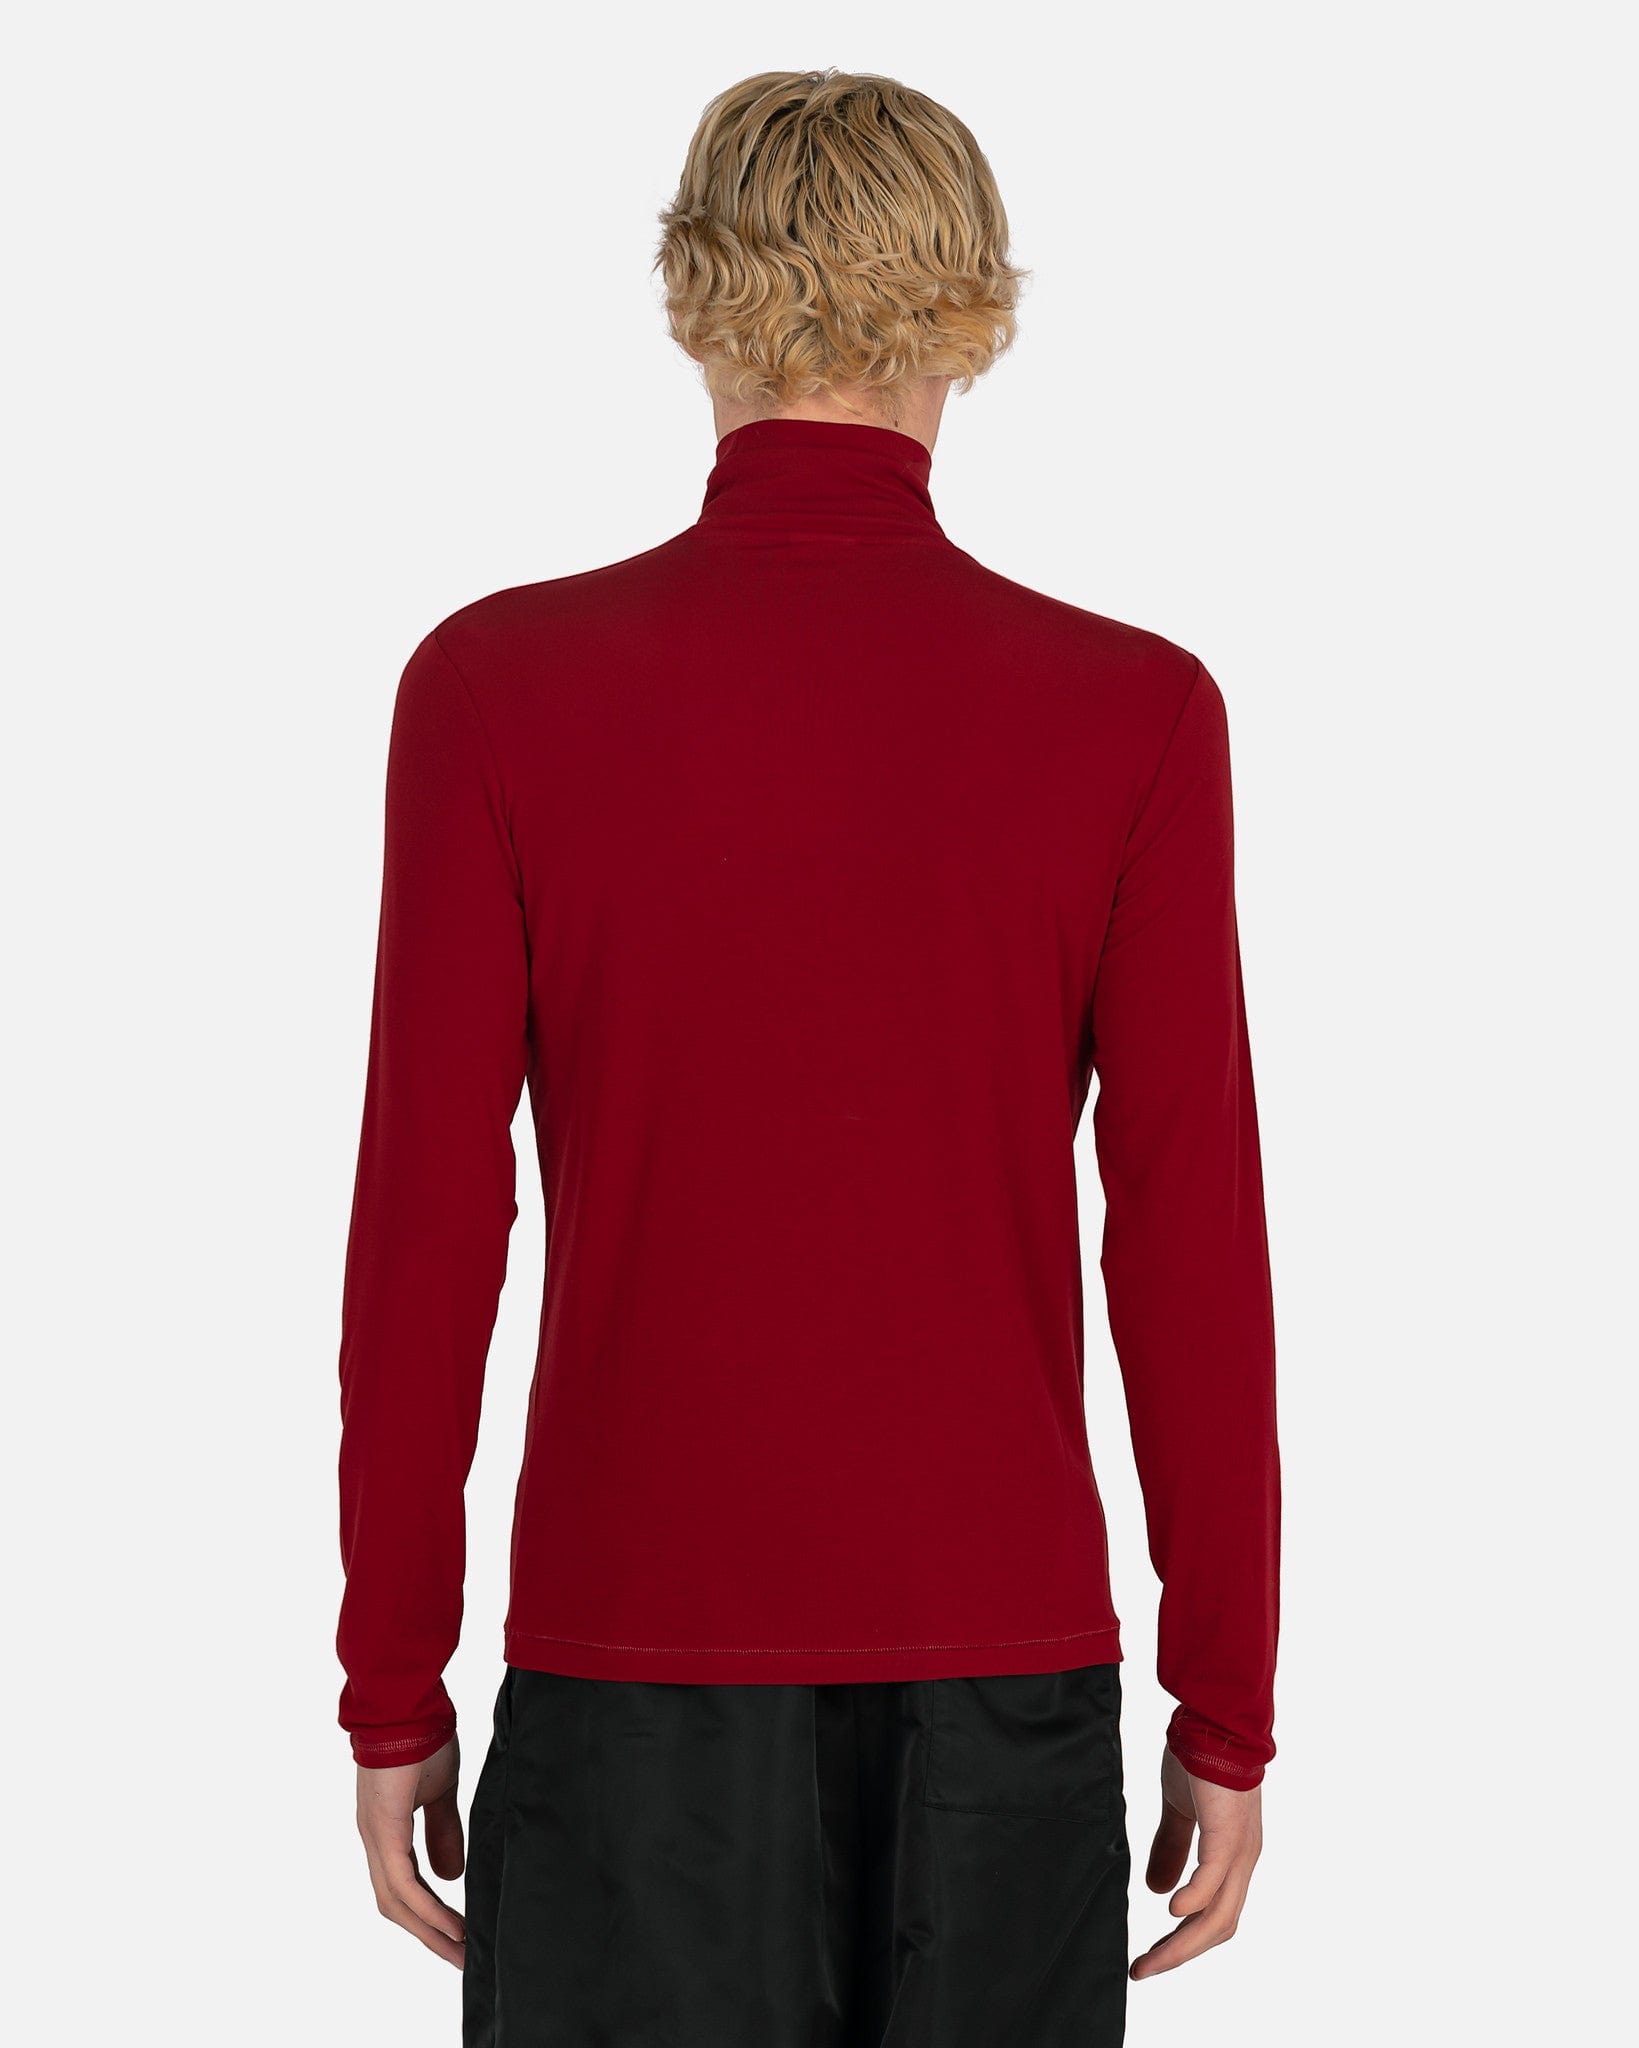 Dries Van Noten Men's Shirts Heyze Jersey in Red